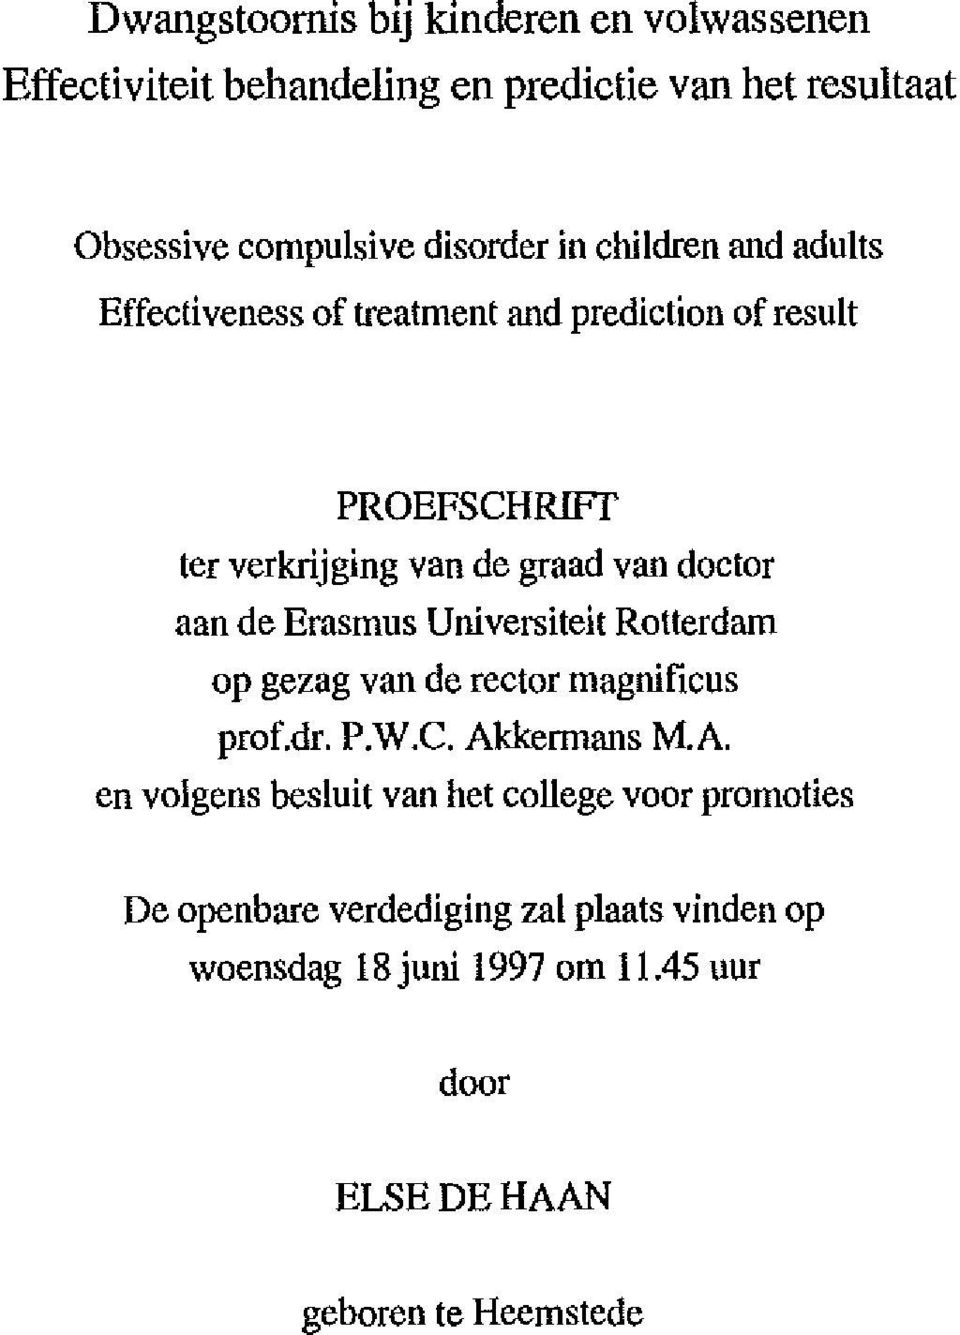 de Erasmus Universiteit Rotterdam op gezag van de rector magnificus prof.dr. P.W.C. Ak